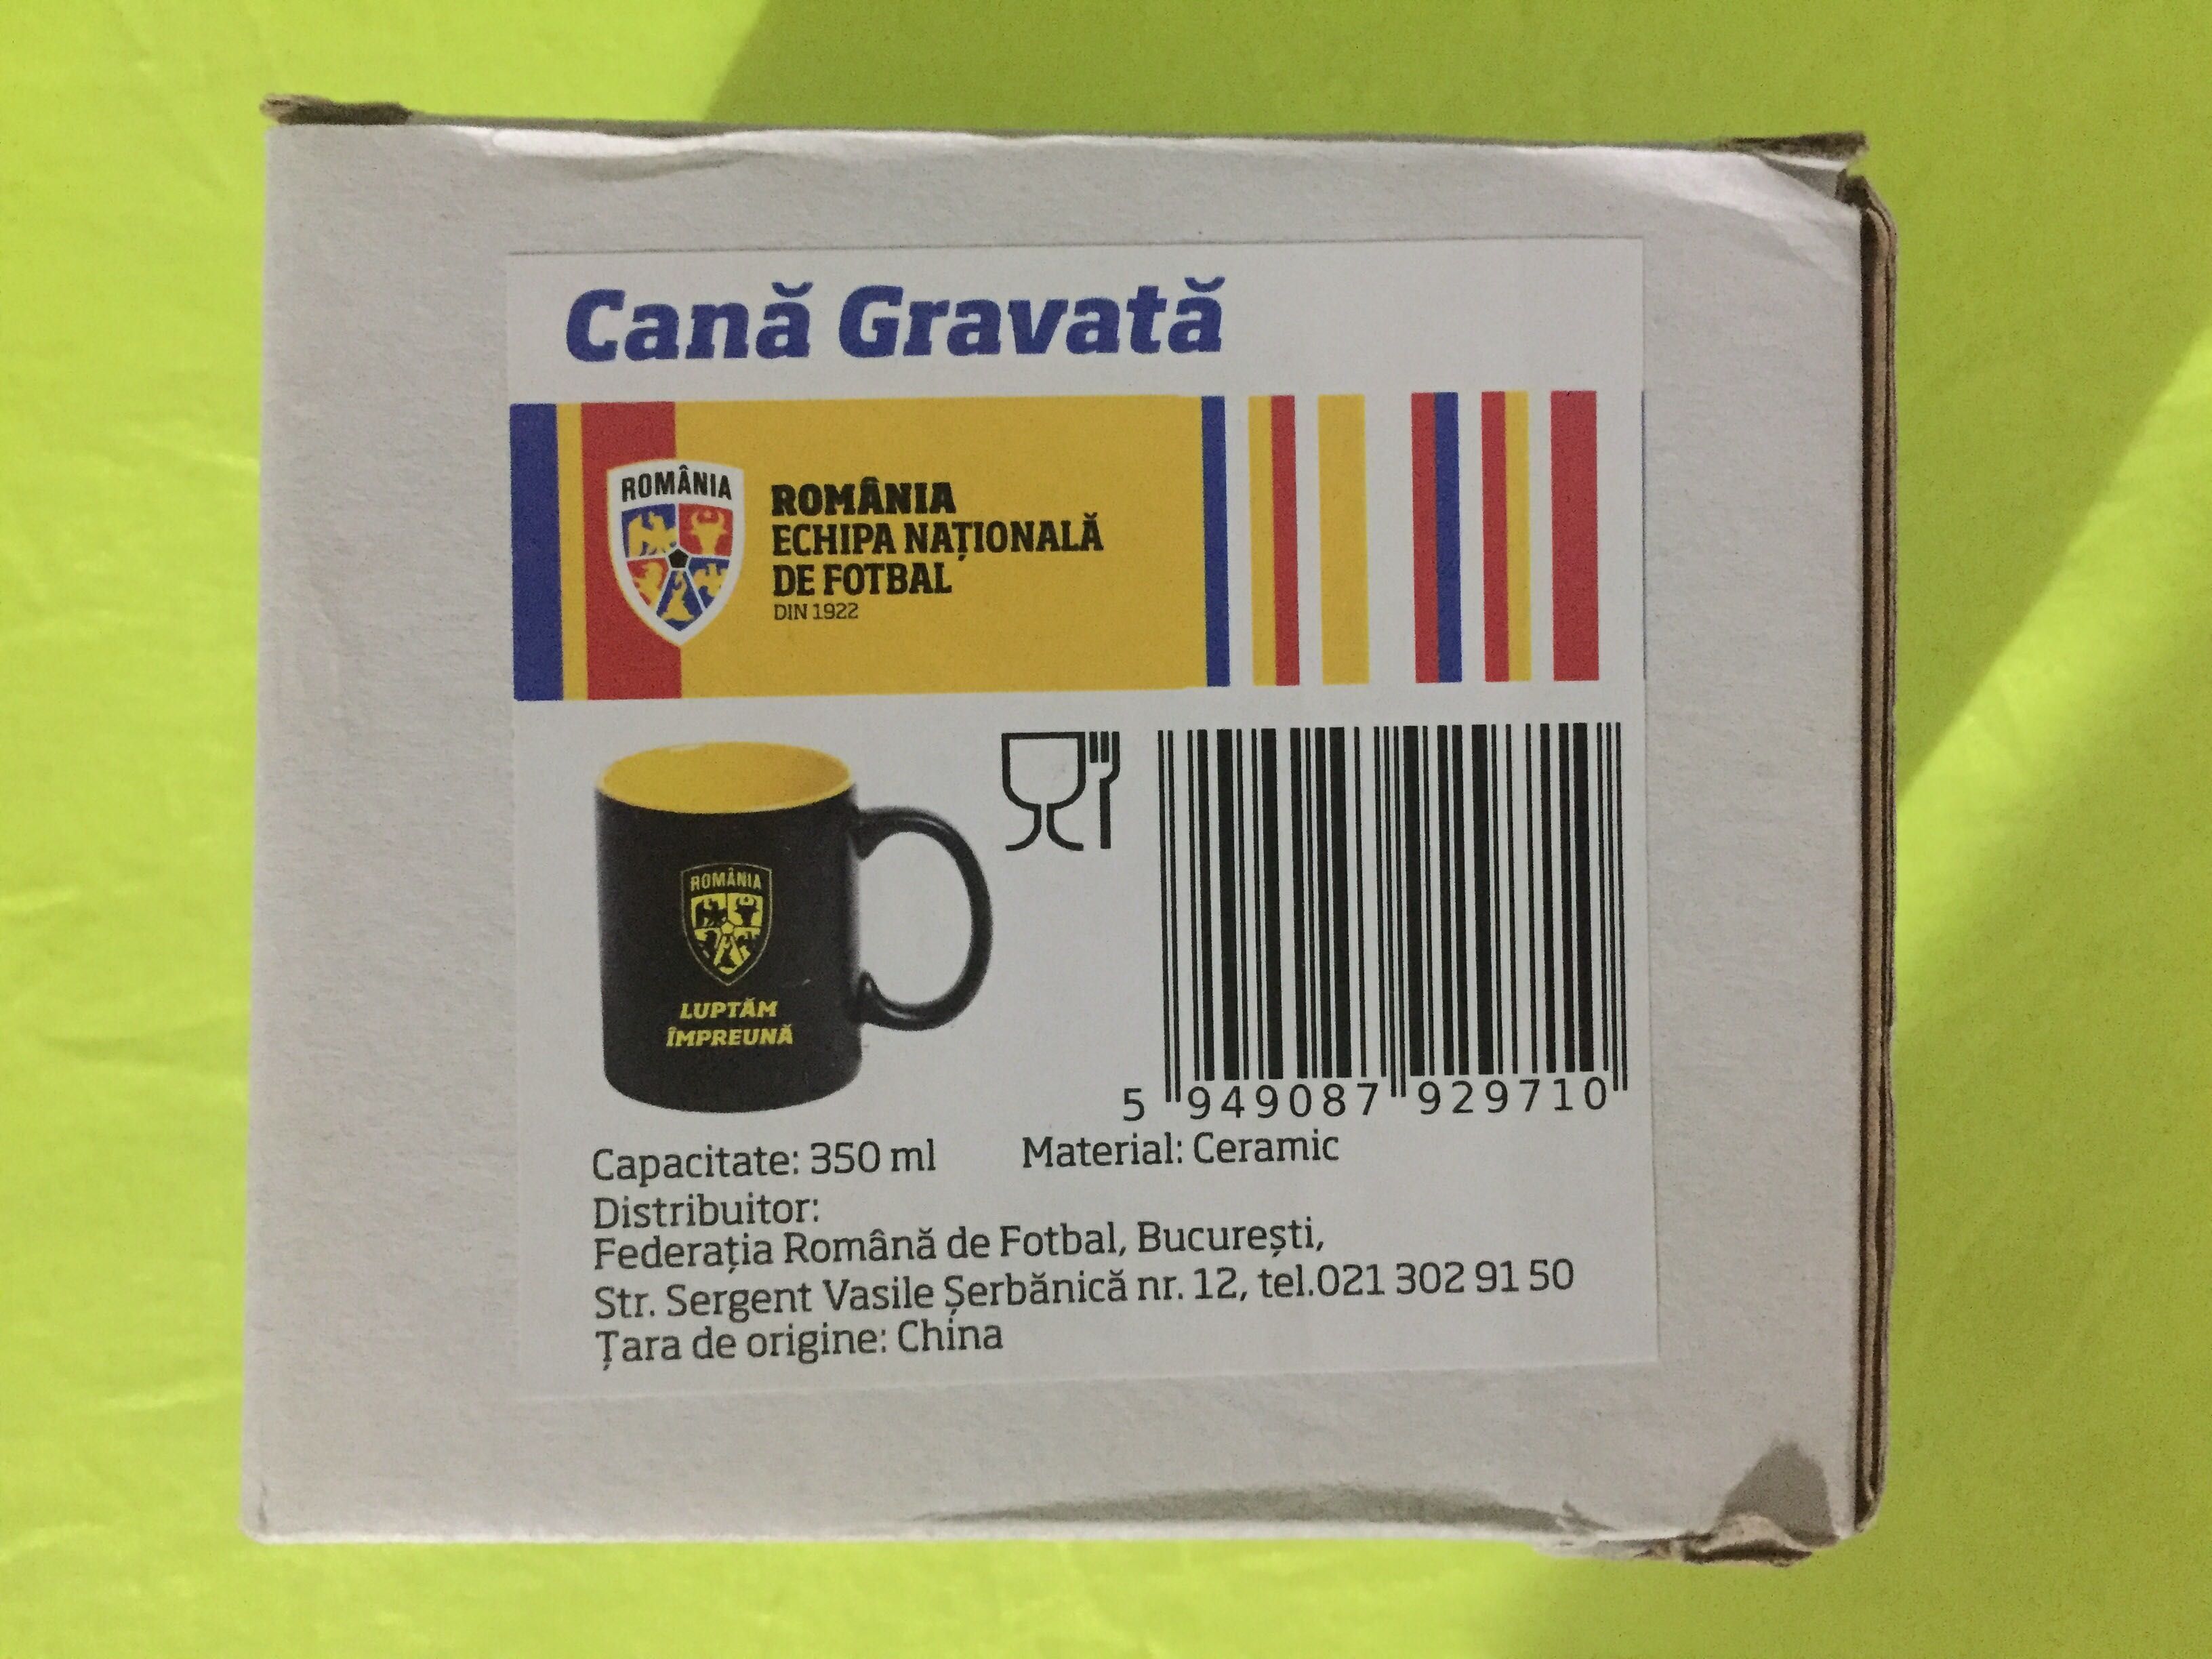 Cana Gravata Romania